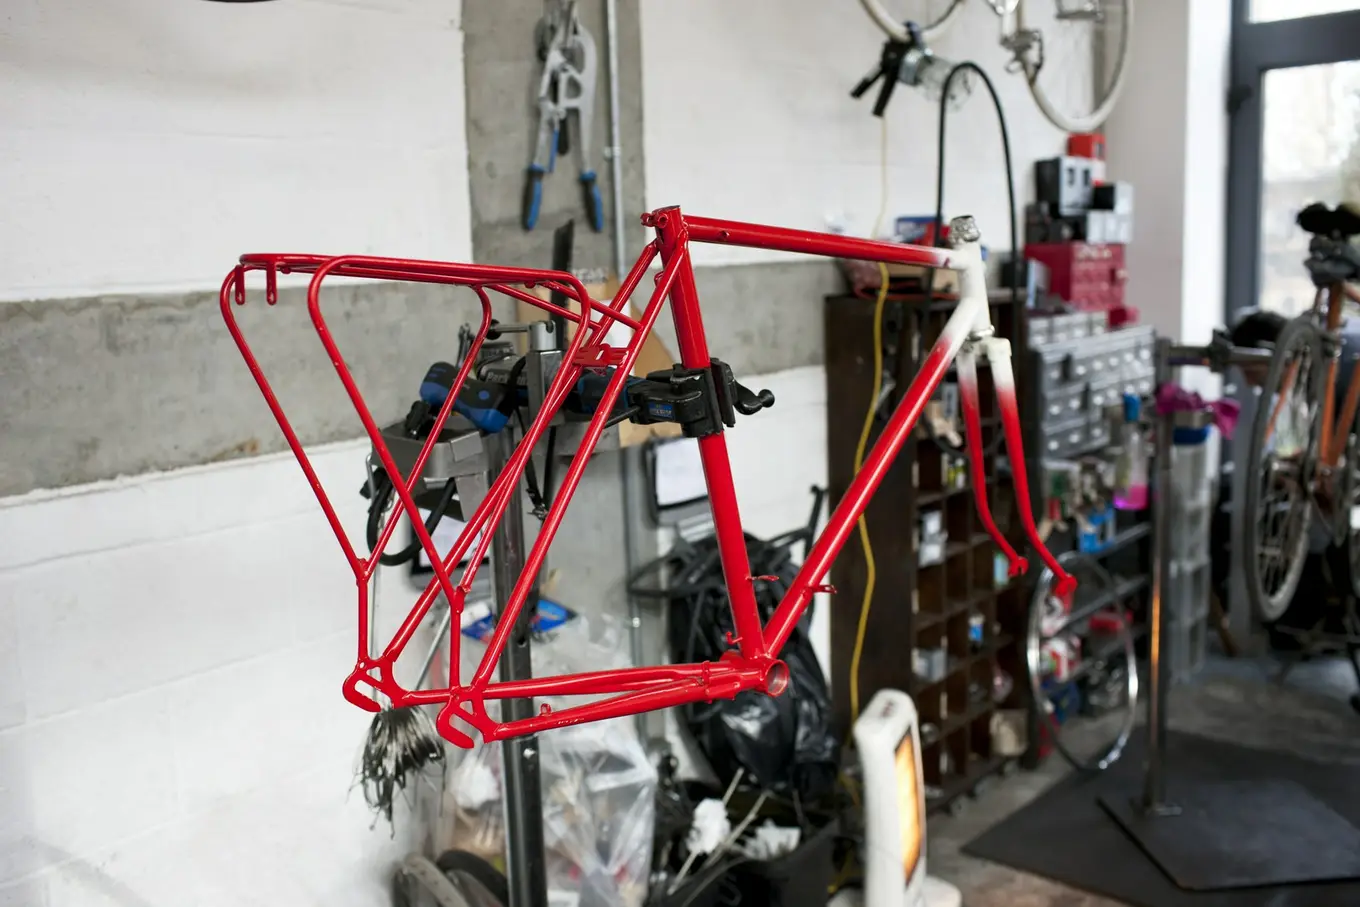 rama roweru przygotowana do malowania